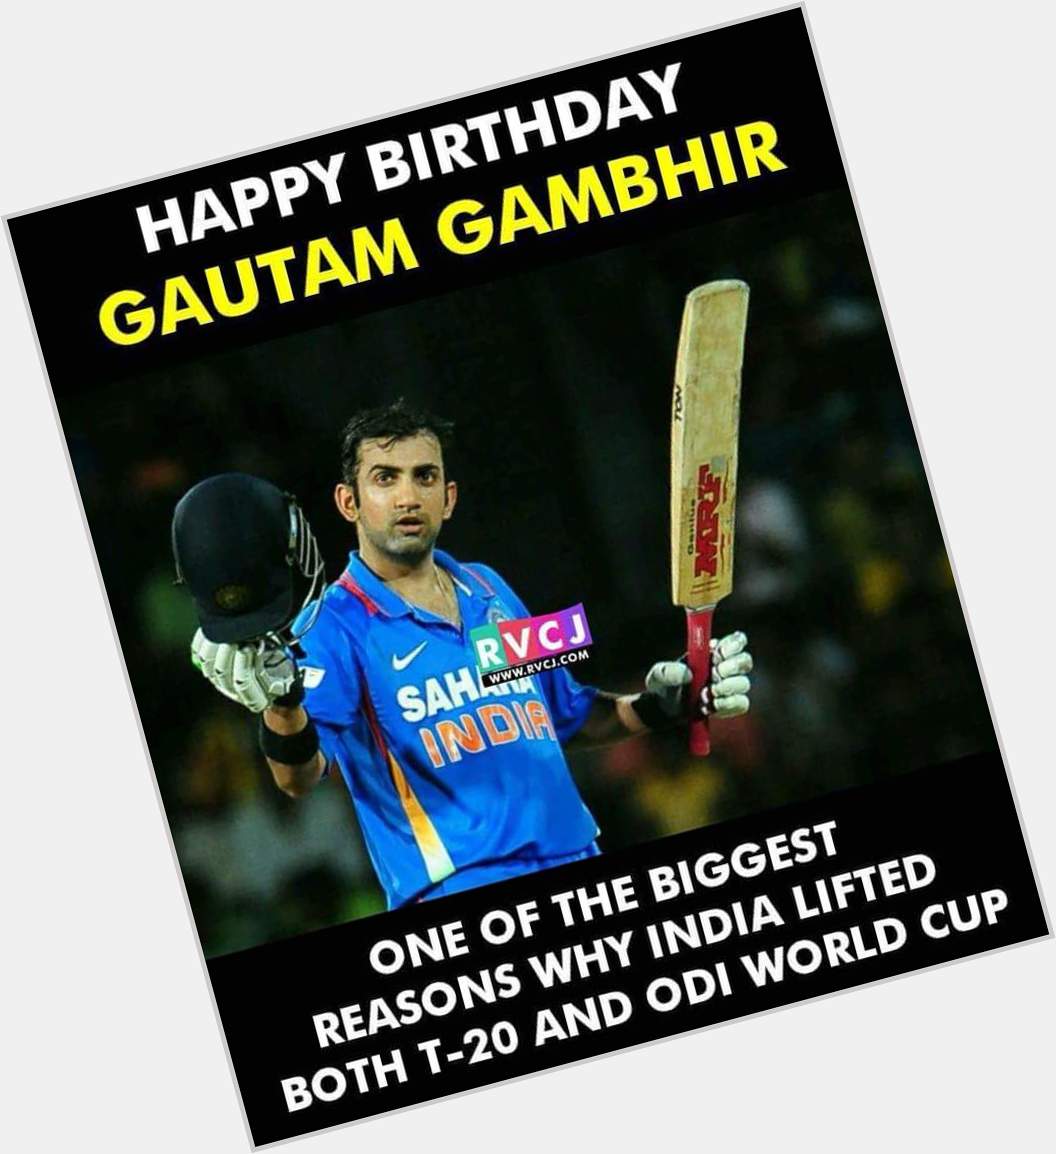 Happy birthday boss gambhir 